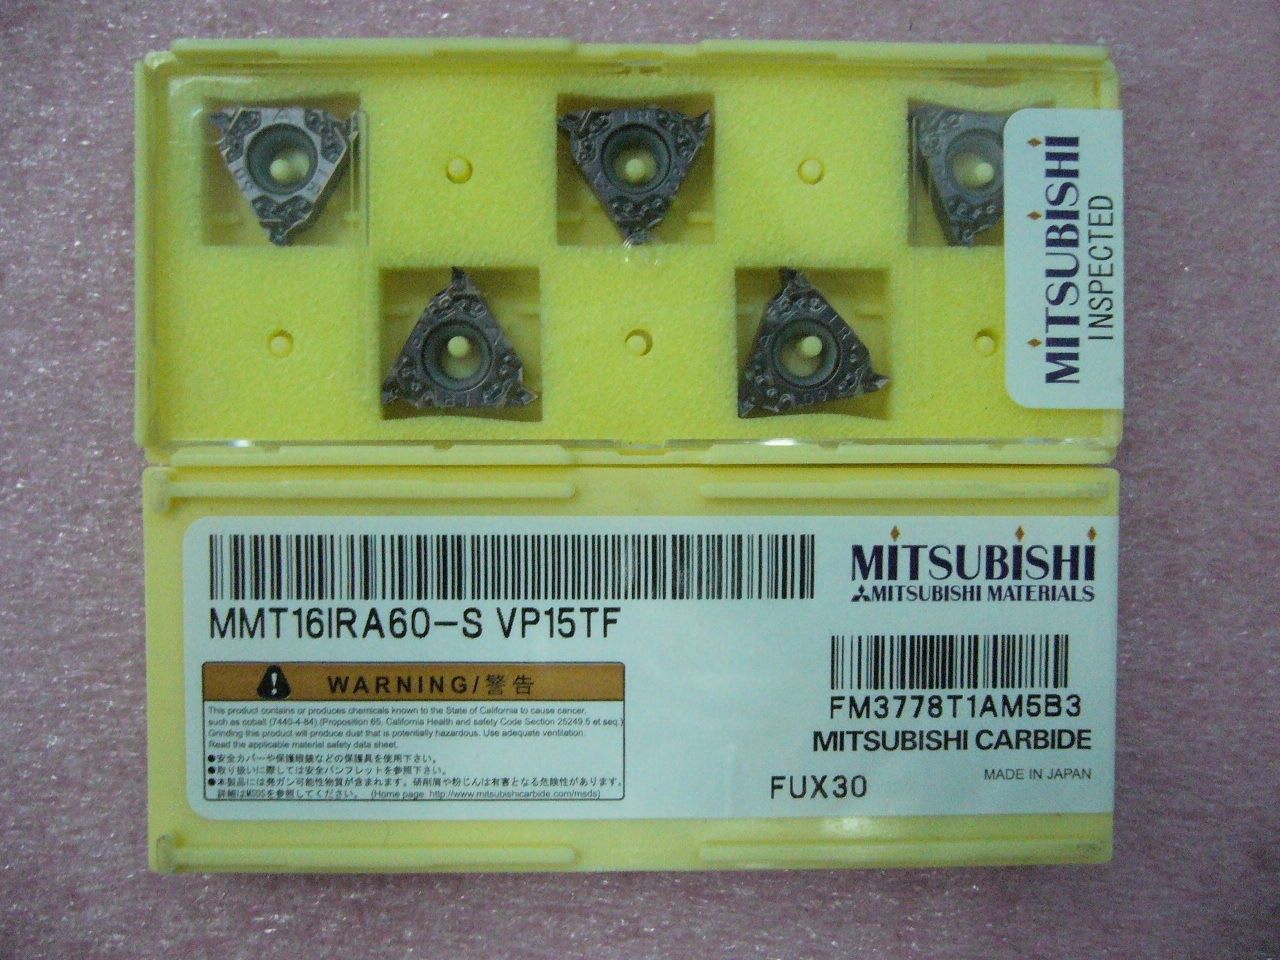 QTY 5x Mitsubishi MMT16IRA60-S VP15TF 16IR A60 Threading Inserts NEW